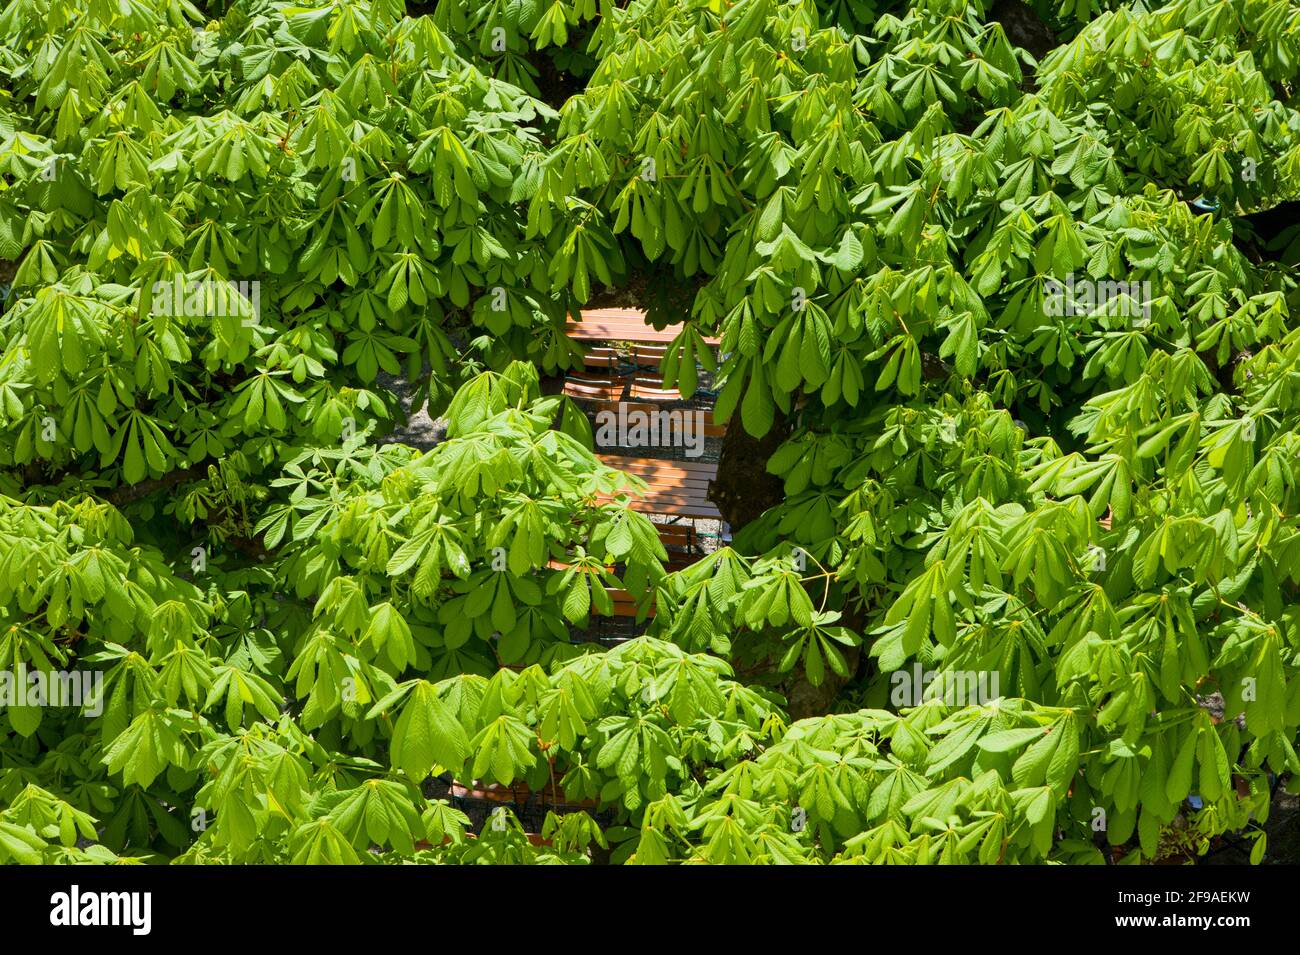 Biertische unter grünen Kastanienbäumen von oben gesehen Stockfoto